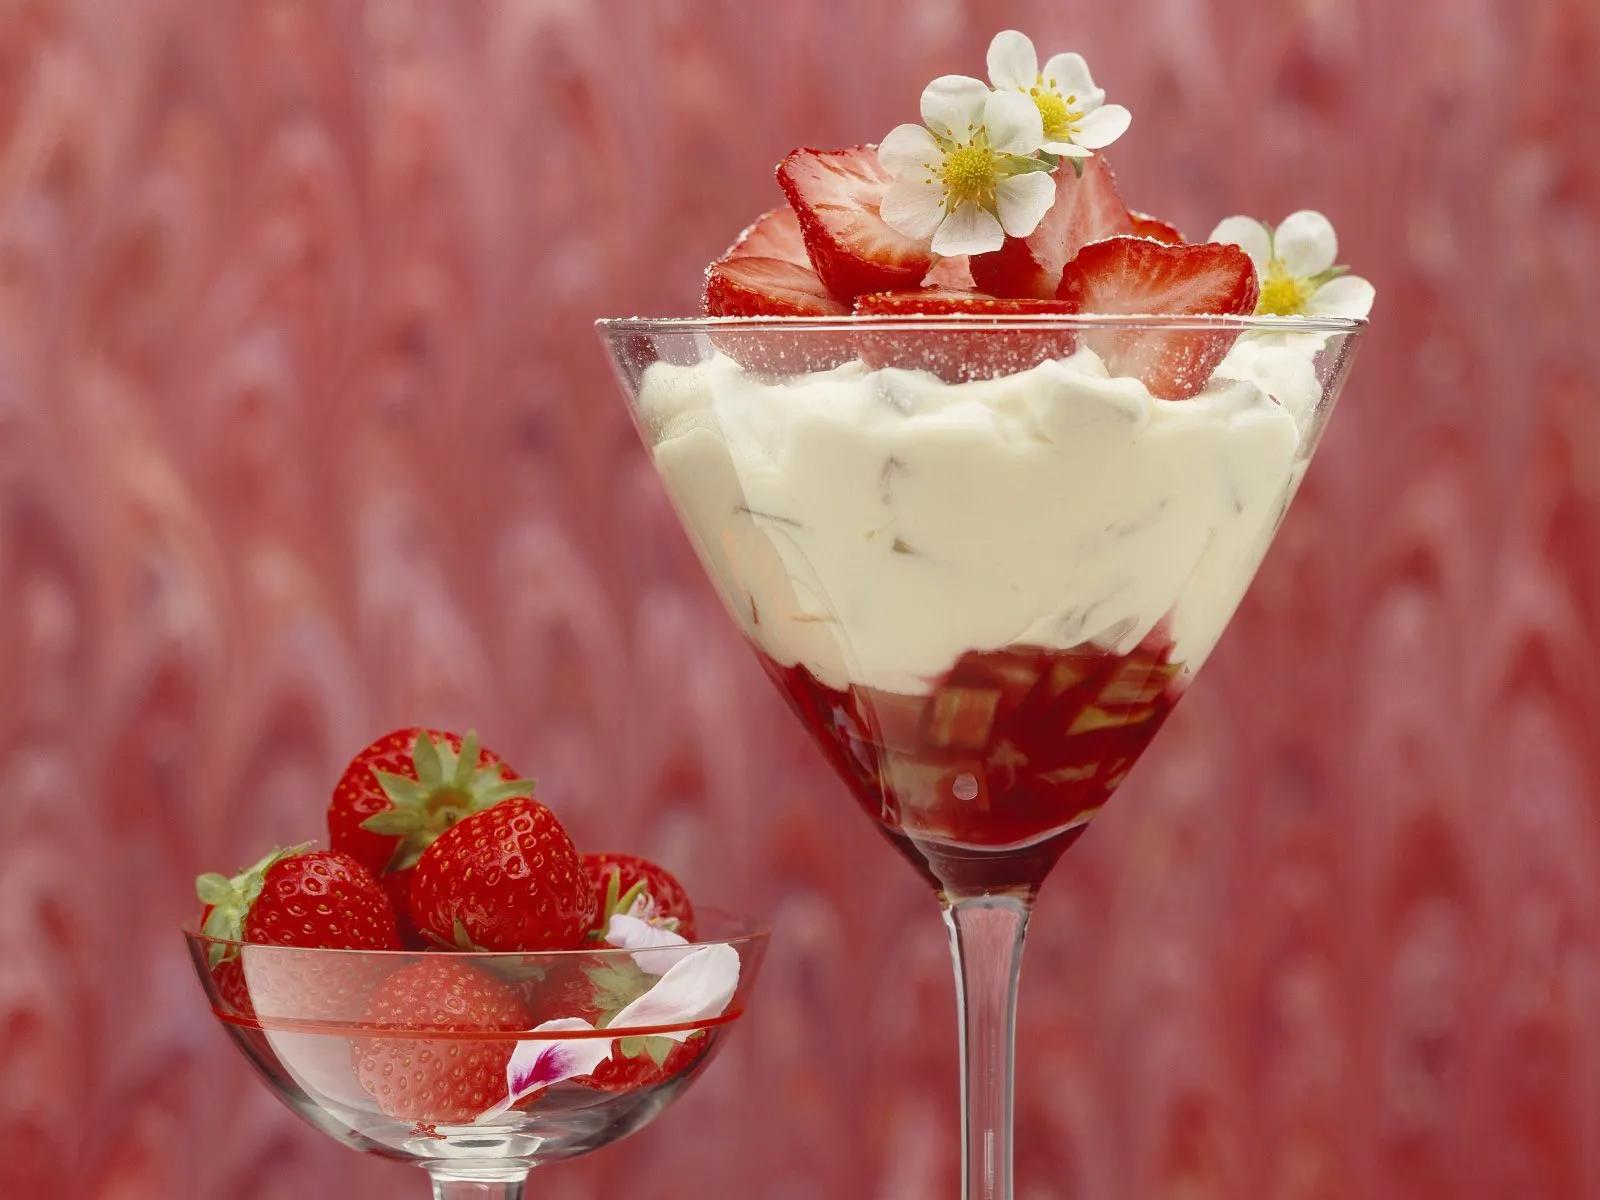 Rhabarber-Erdbeer-Dessert Rezept | EAT SMARTER